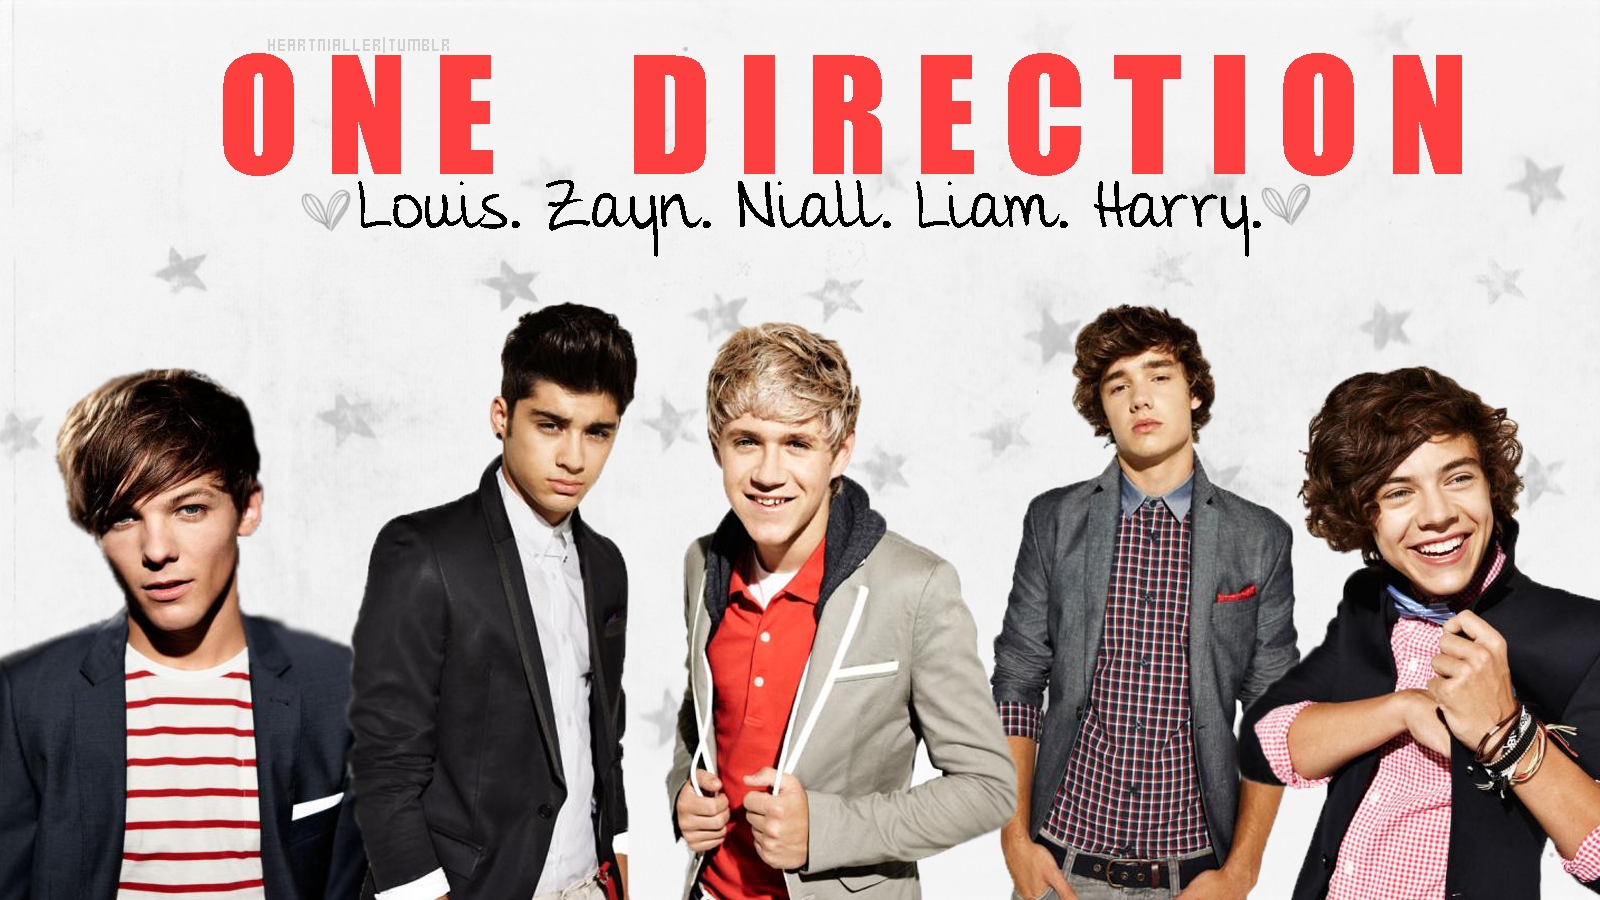 One Direction - One-Direction-3-one-direction-28758001-1600-900.jpg